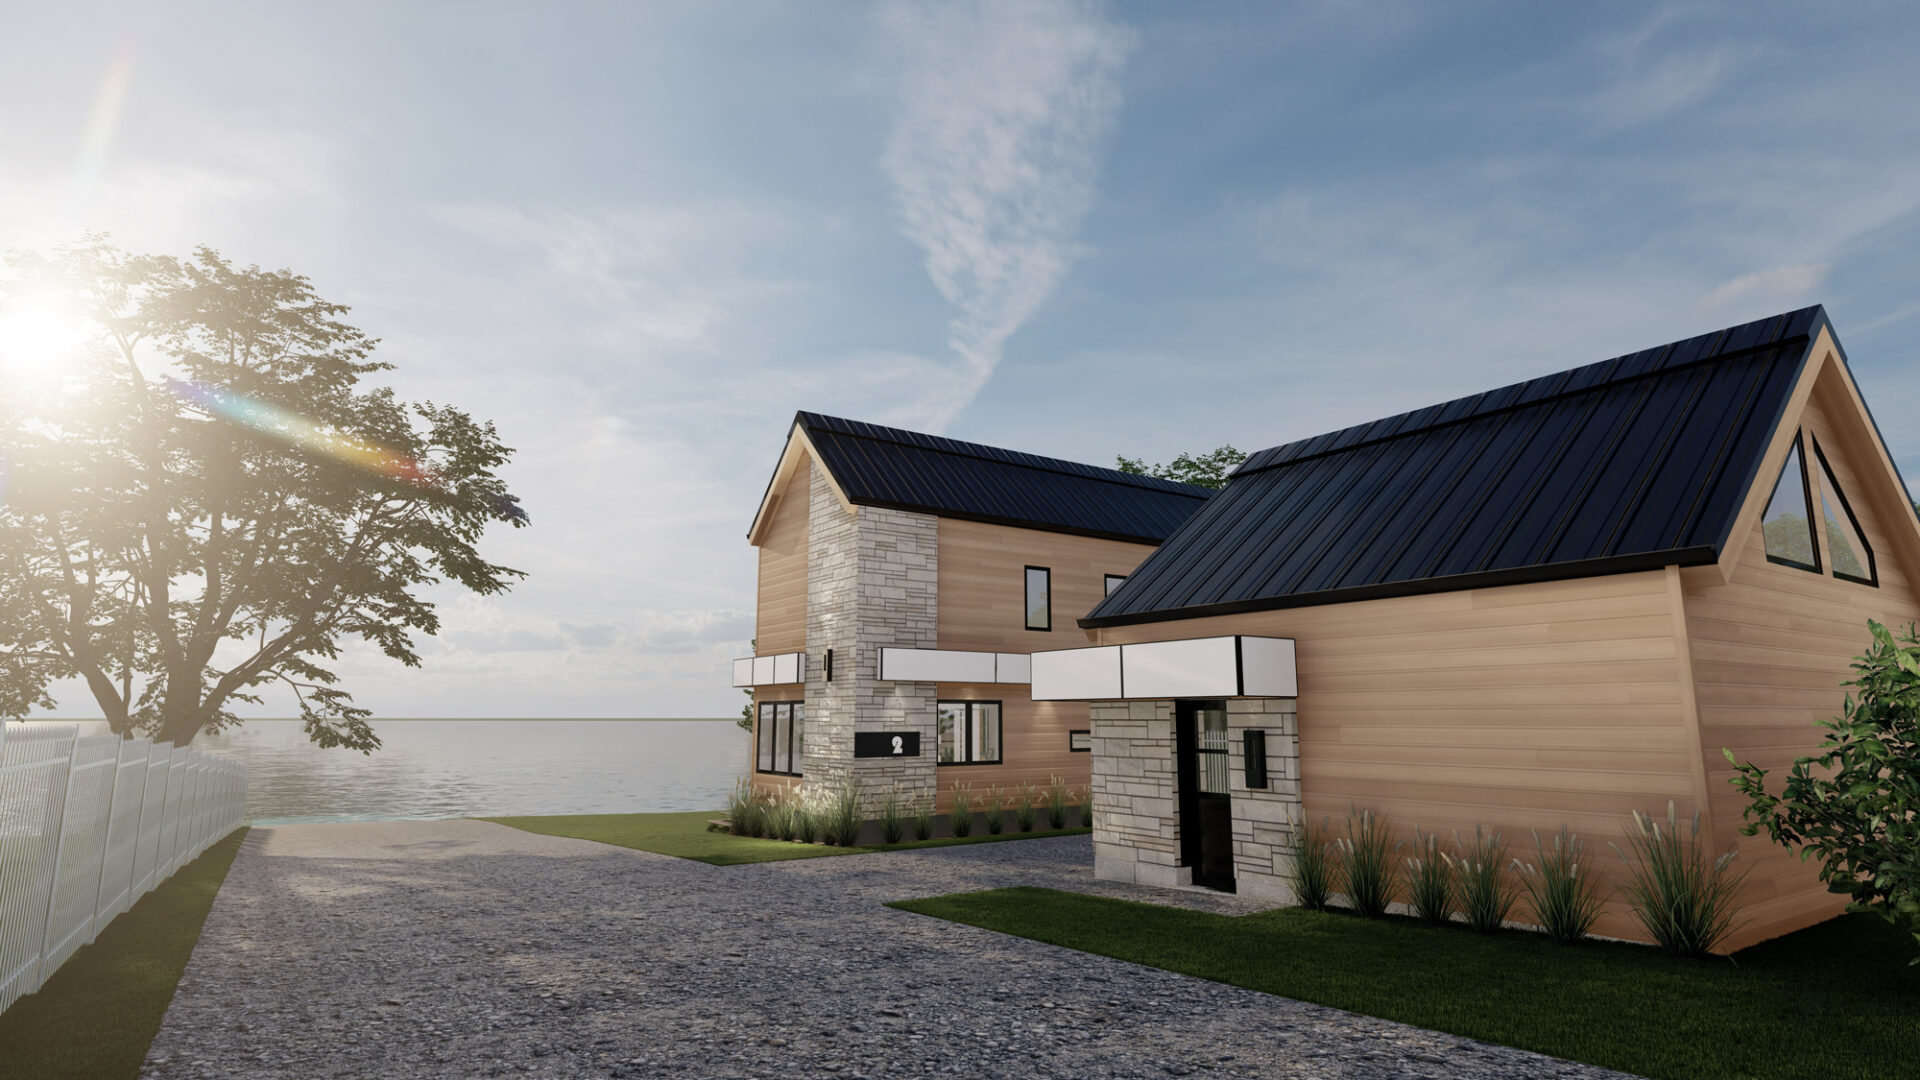 Style scandinave, rénovation majeure, revêtement de bois naturel, revêtement d'aluminium Rialux avec de la maçonnerie, toit en tôle, vue sur le lac